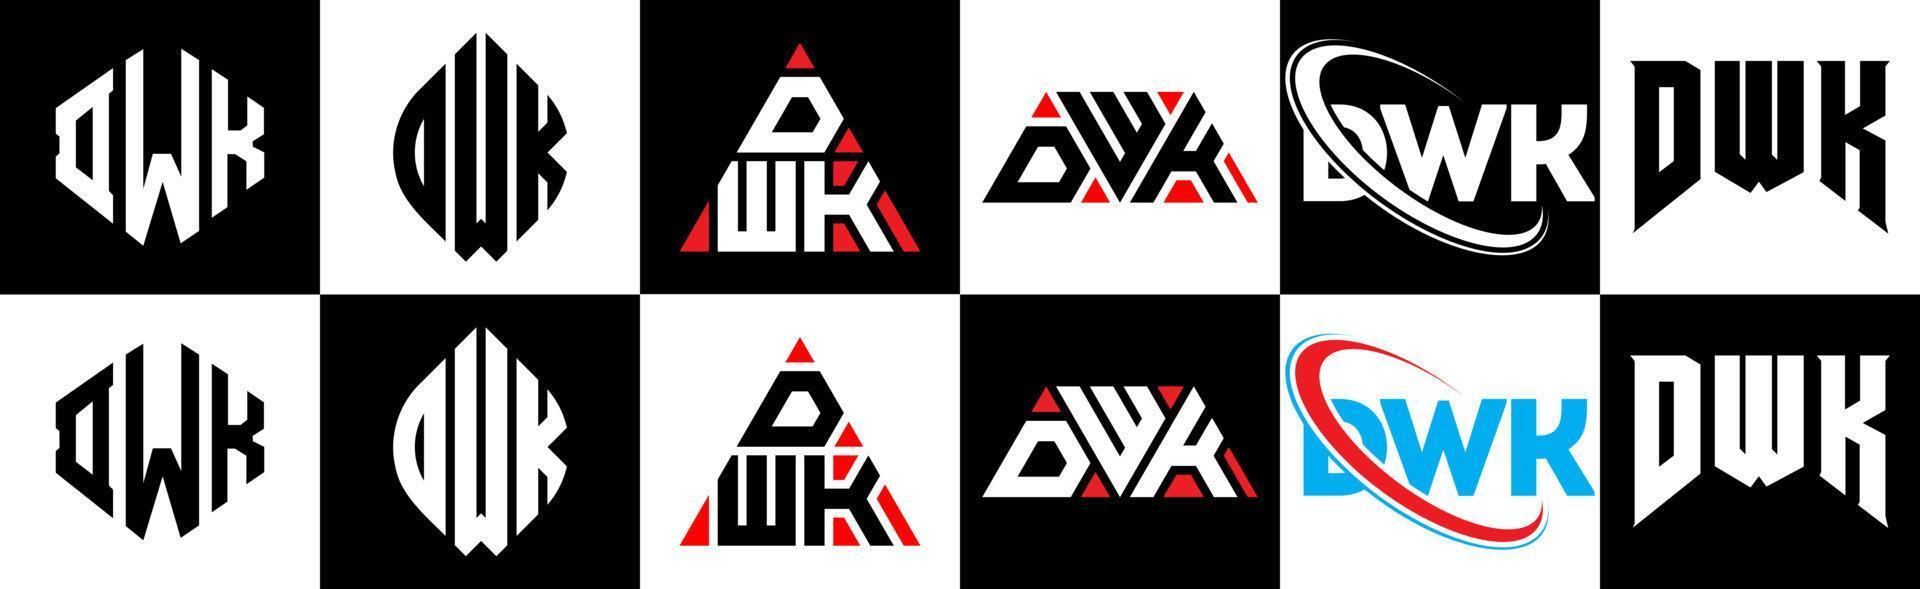 design de logotipo de letra dwk em seis estilo. dwk polígono, círculo, triângulo, hexágono, estilo plano e simples com logotipo de carta de variação de cor preto e branco definido em uma prancheta. dwk logotipo minimalista e clássico vetor